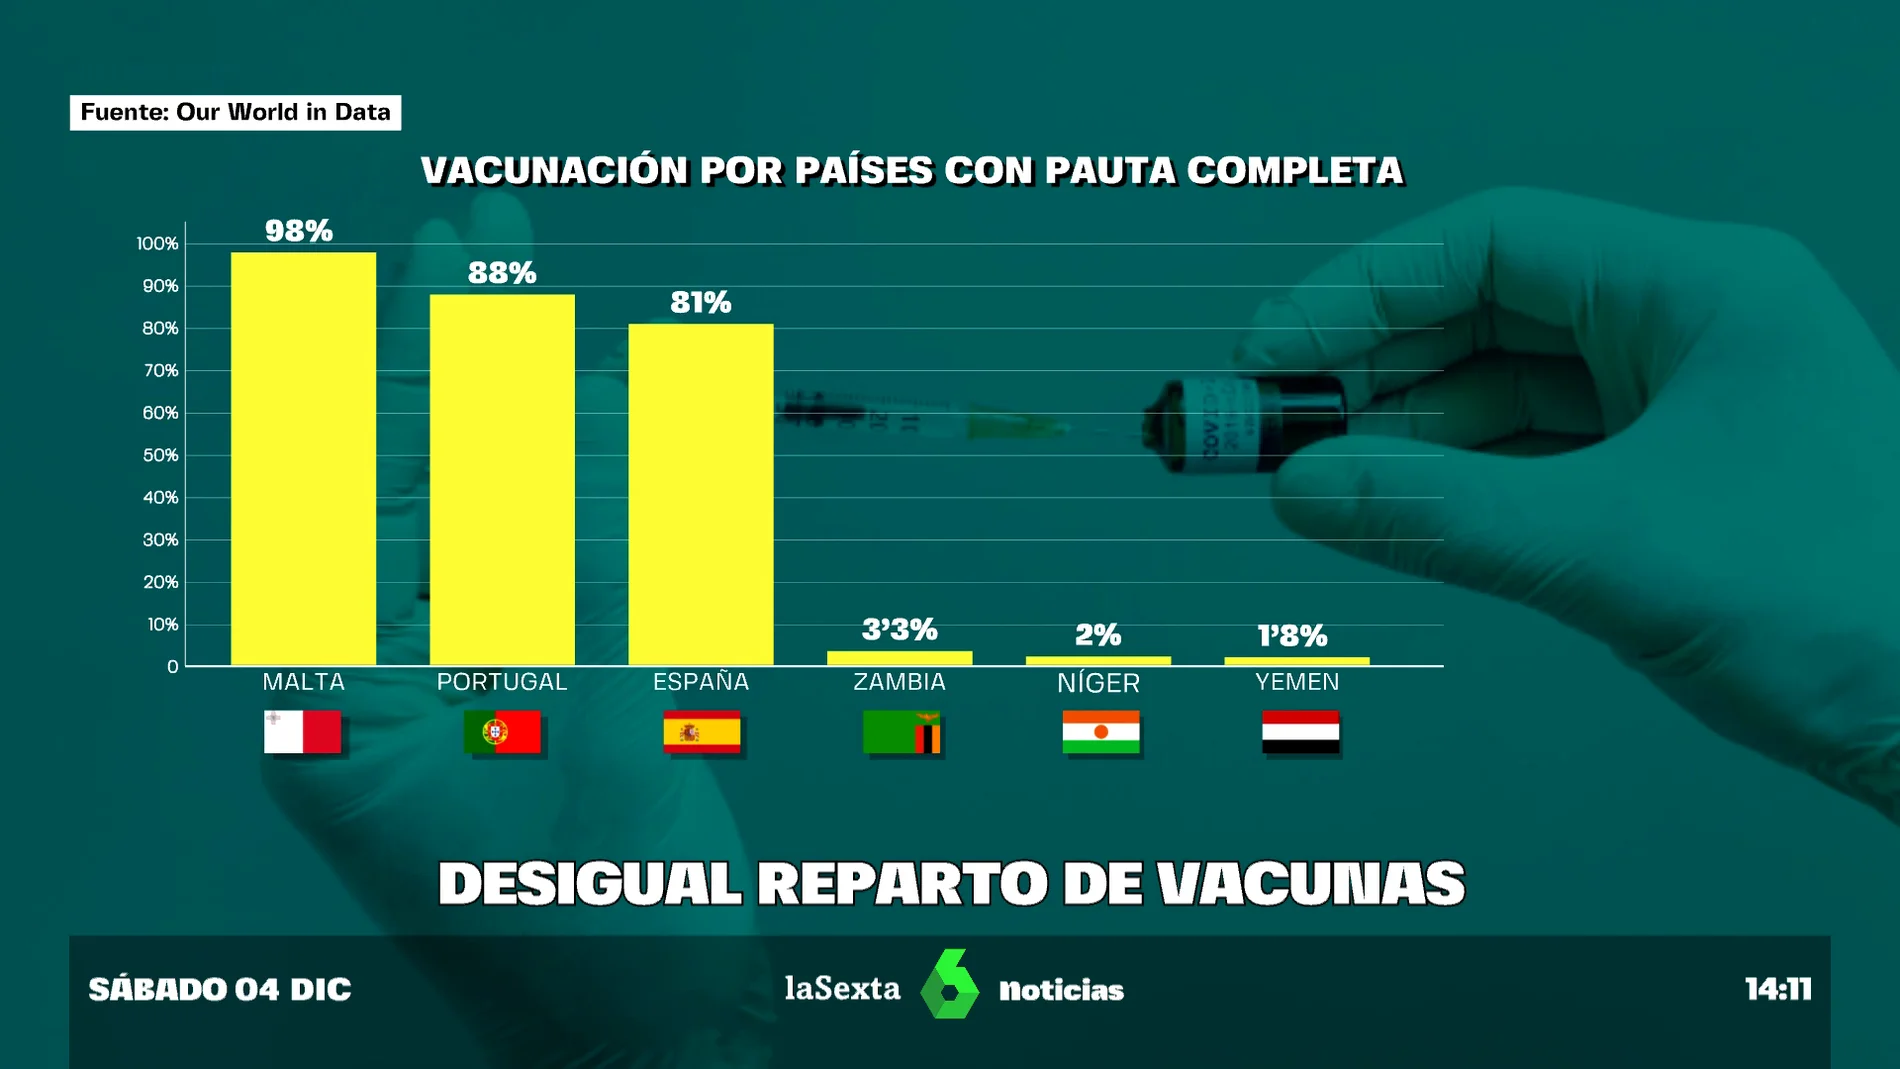 Desigual reparto de vacunas